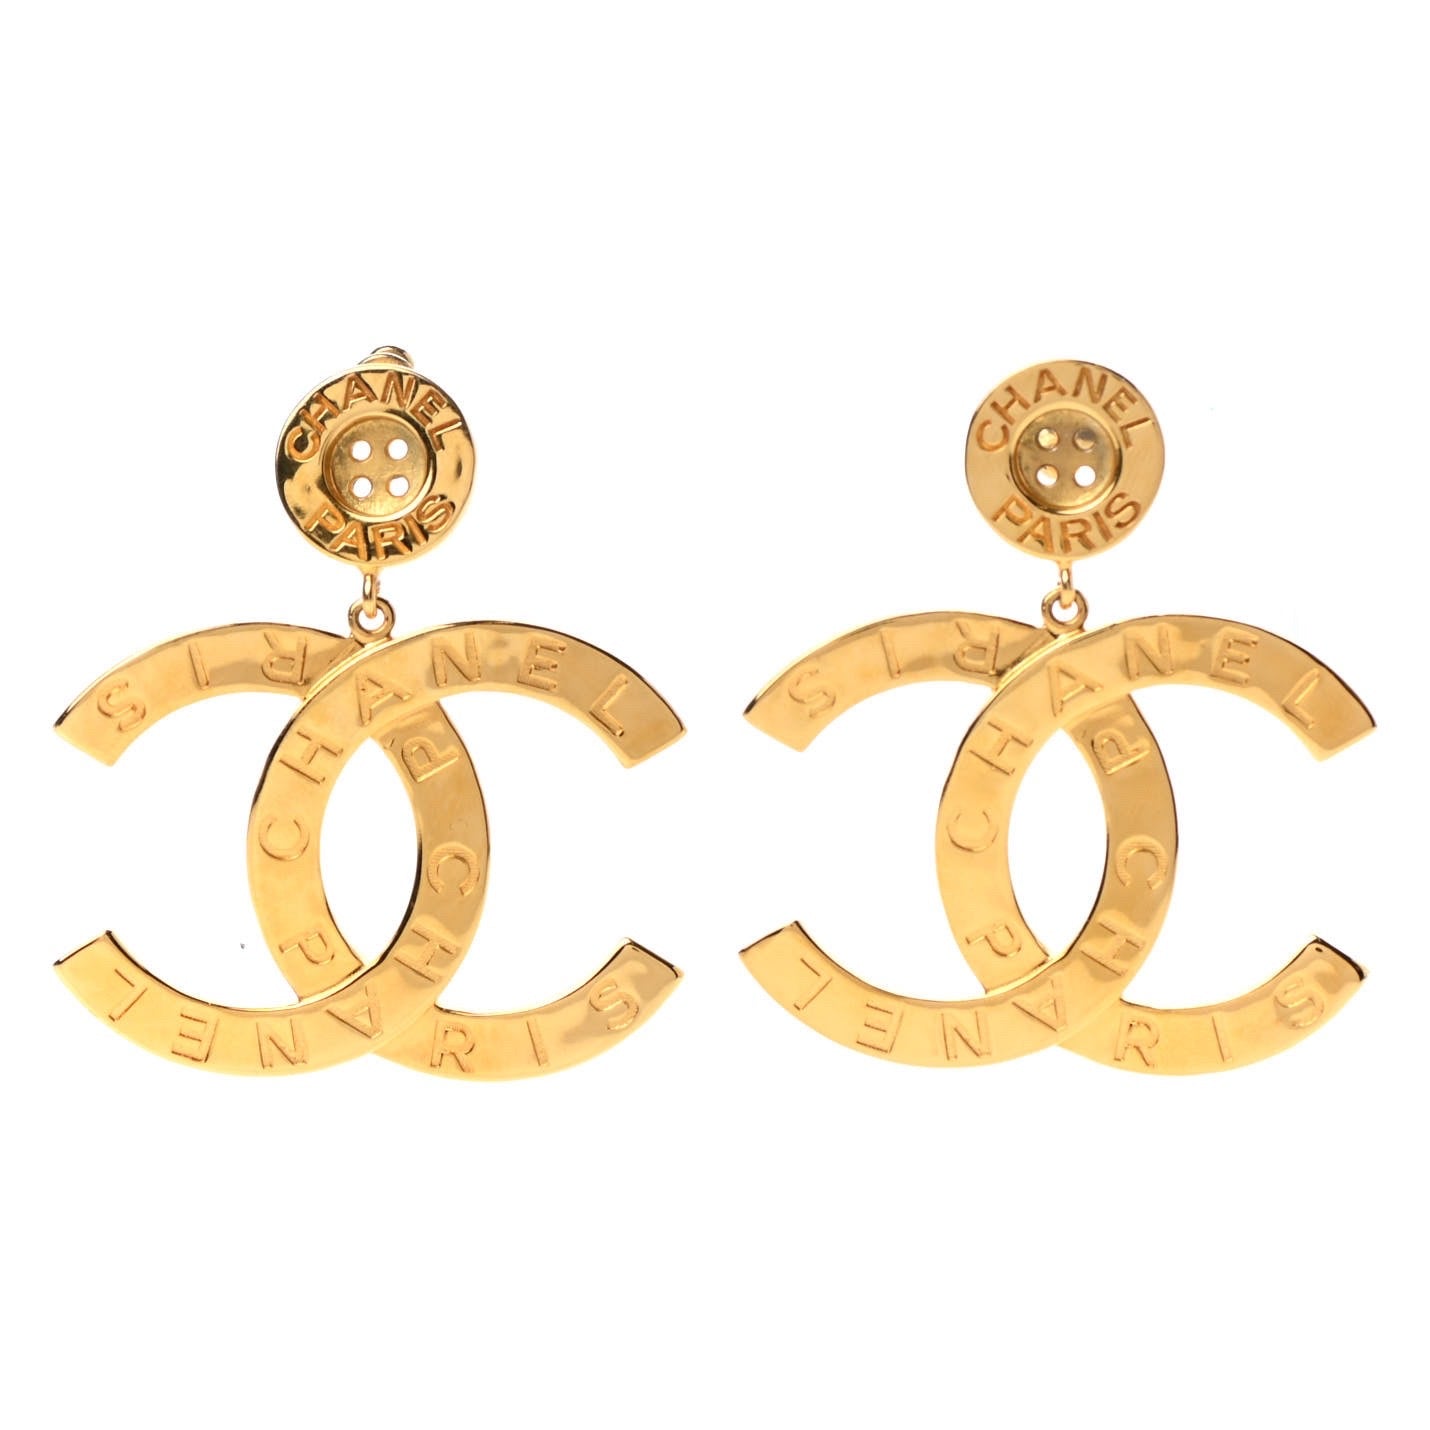 Chanel Logo Diamond Earrings  027ctw   100 Ways